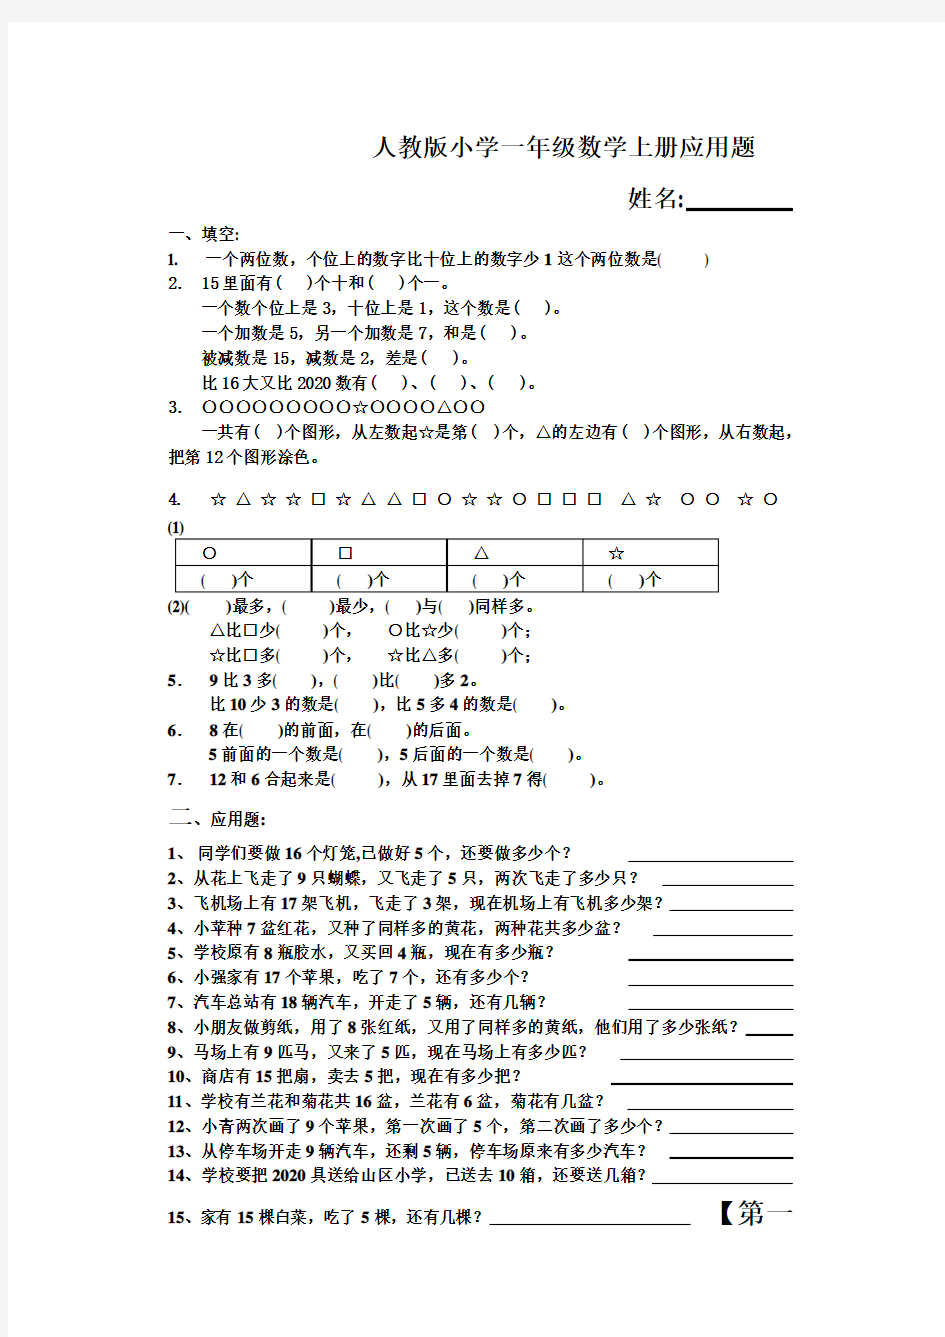 新人教版一年级数学上册应用题大全(50道)